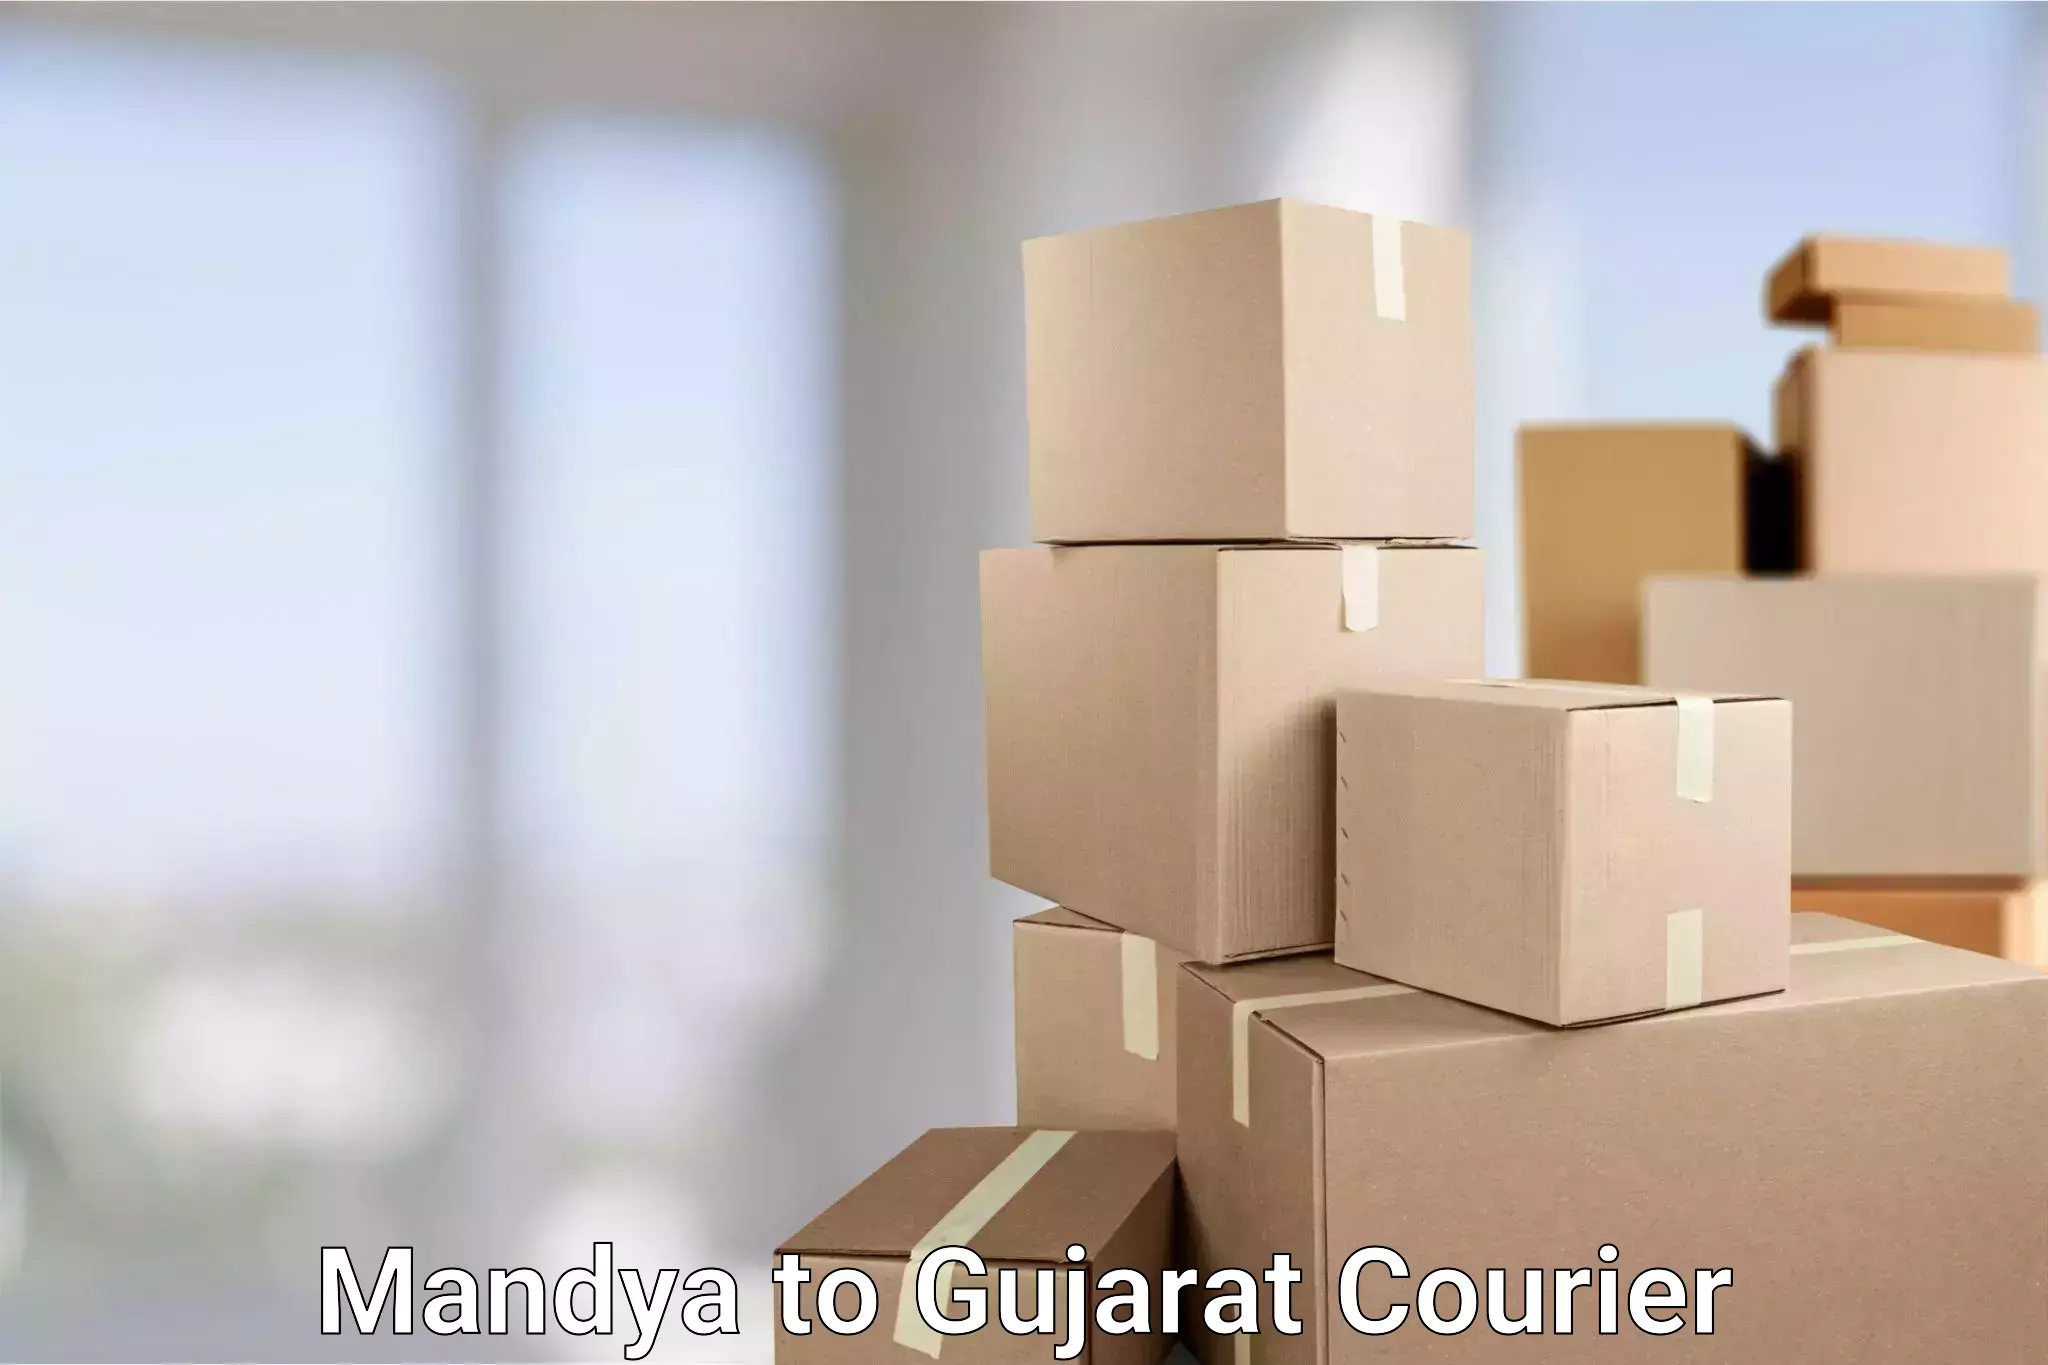 Delivery service partnership Mandya to Gujarat